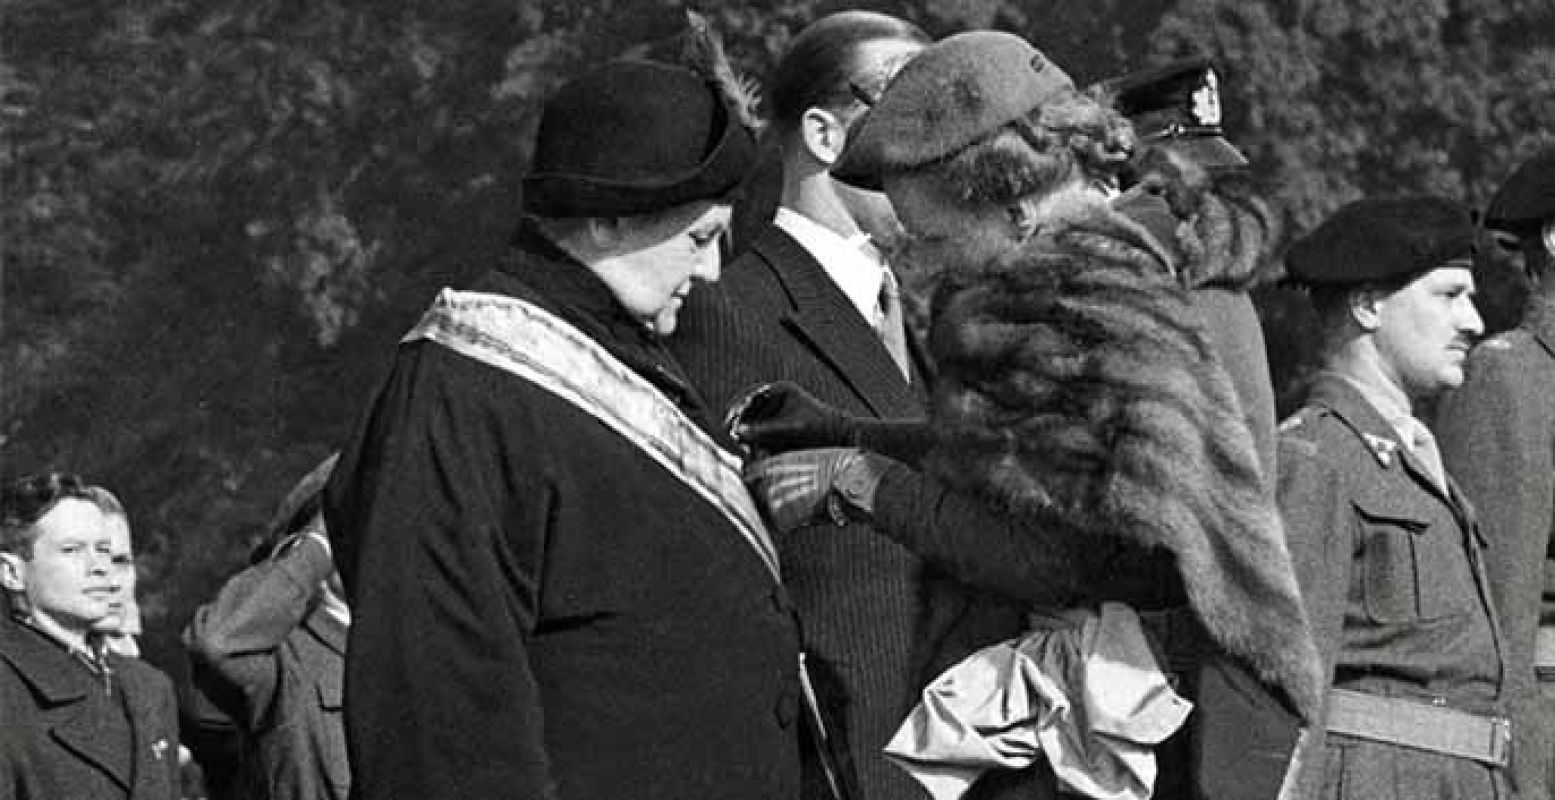 Juliana speldt haar moeder in 1948 de Militaire Willemsorde op. Collectie: Koninklijk Huisarchief